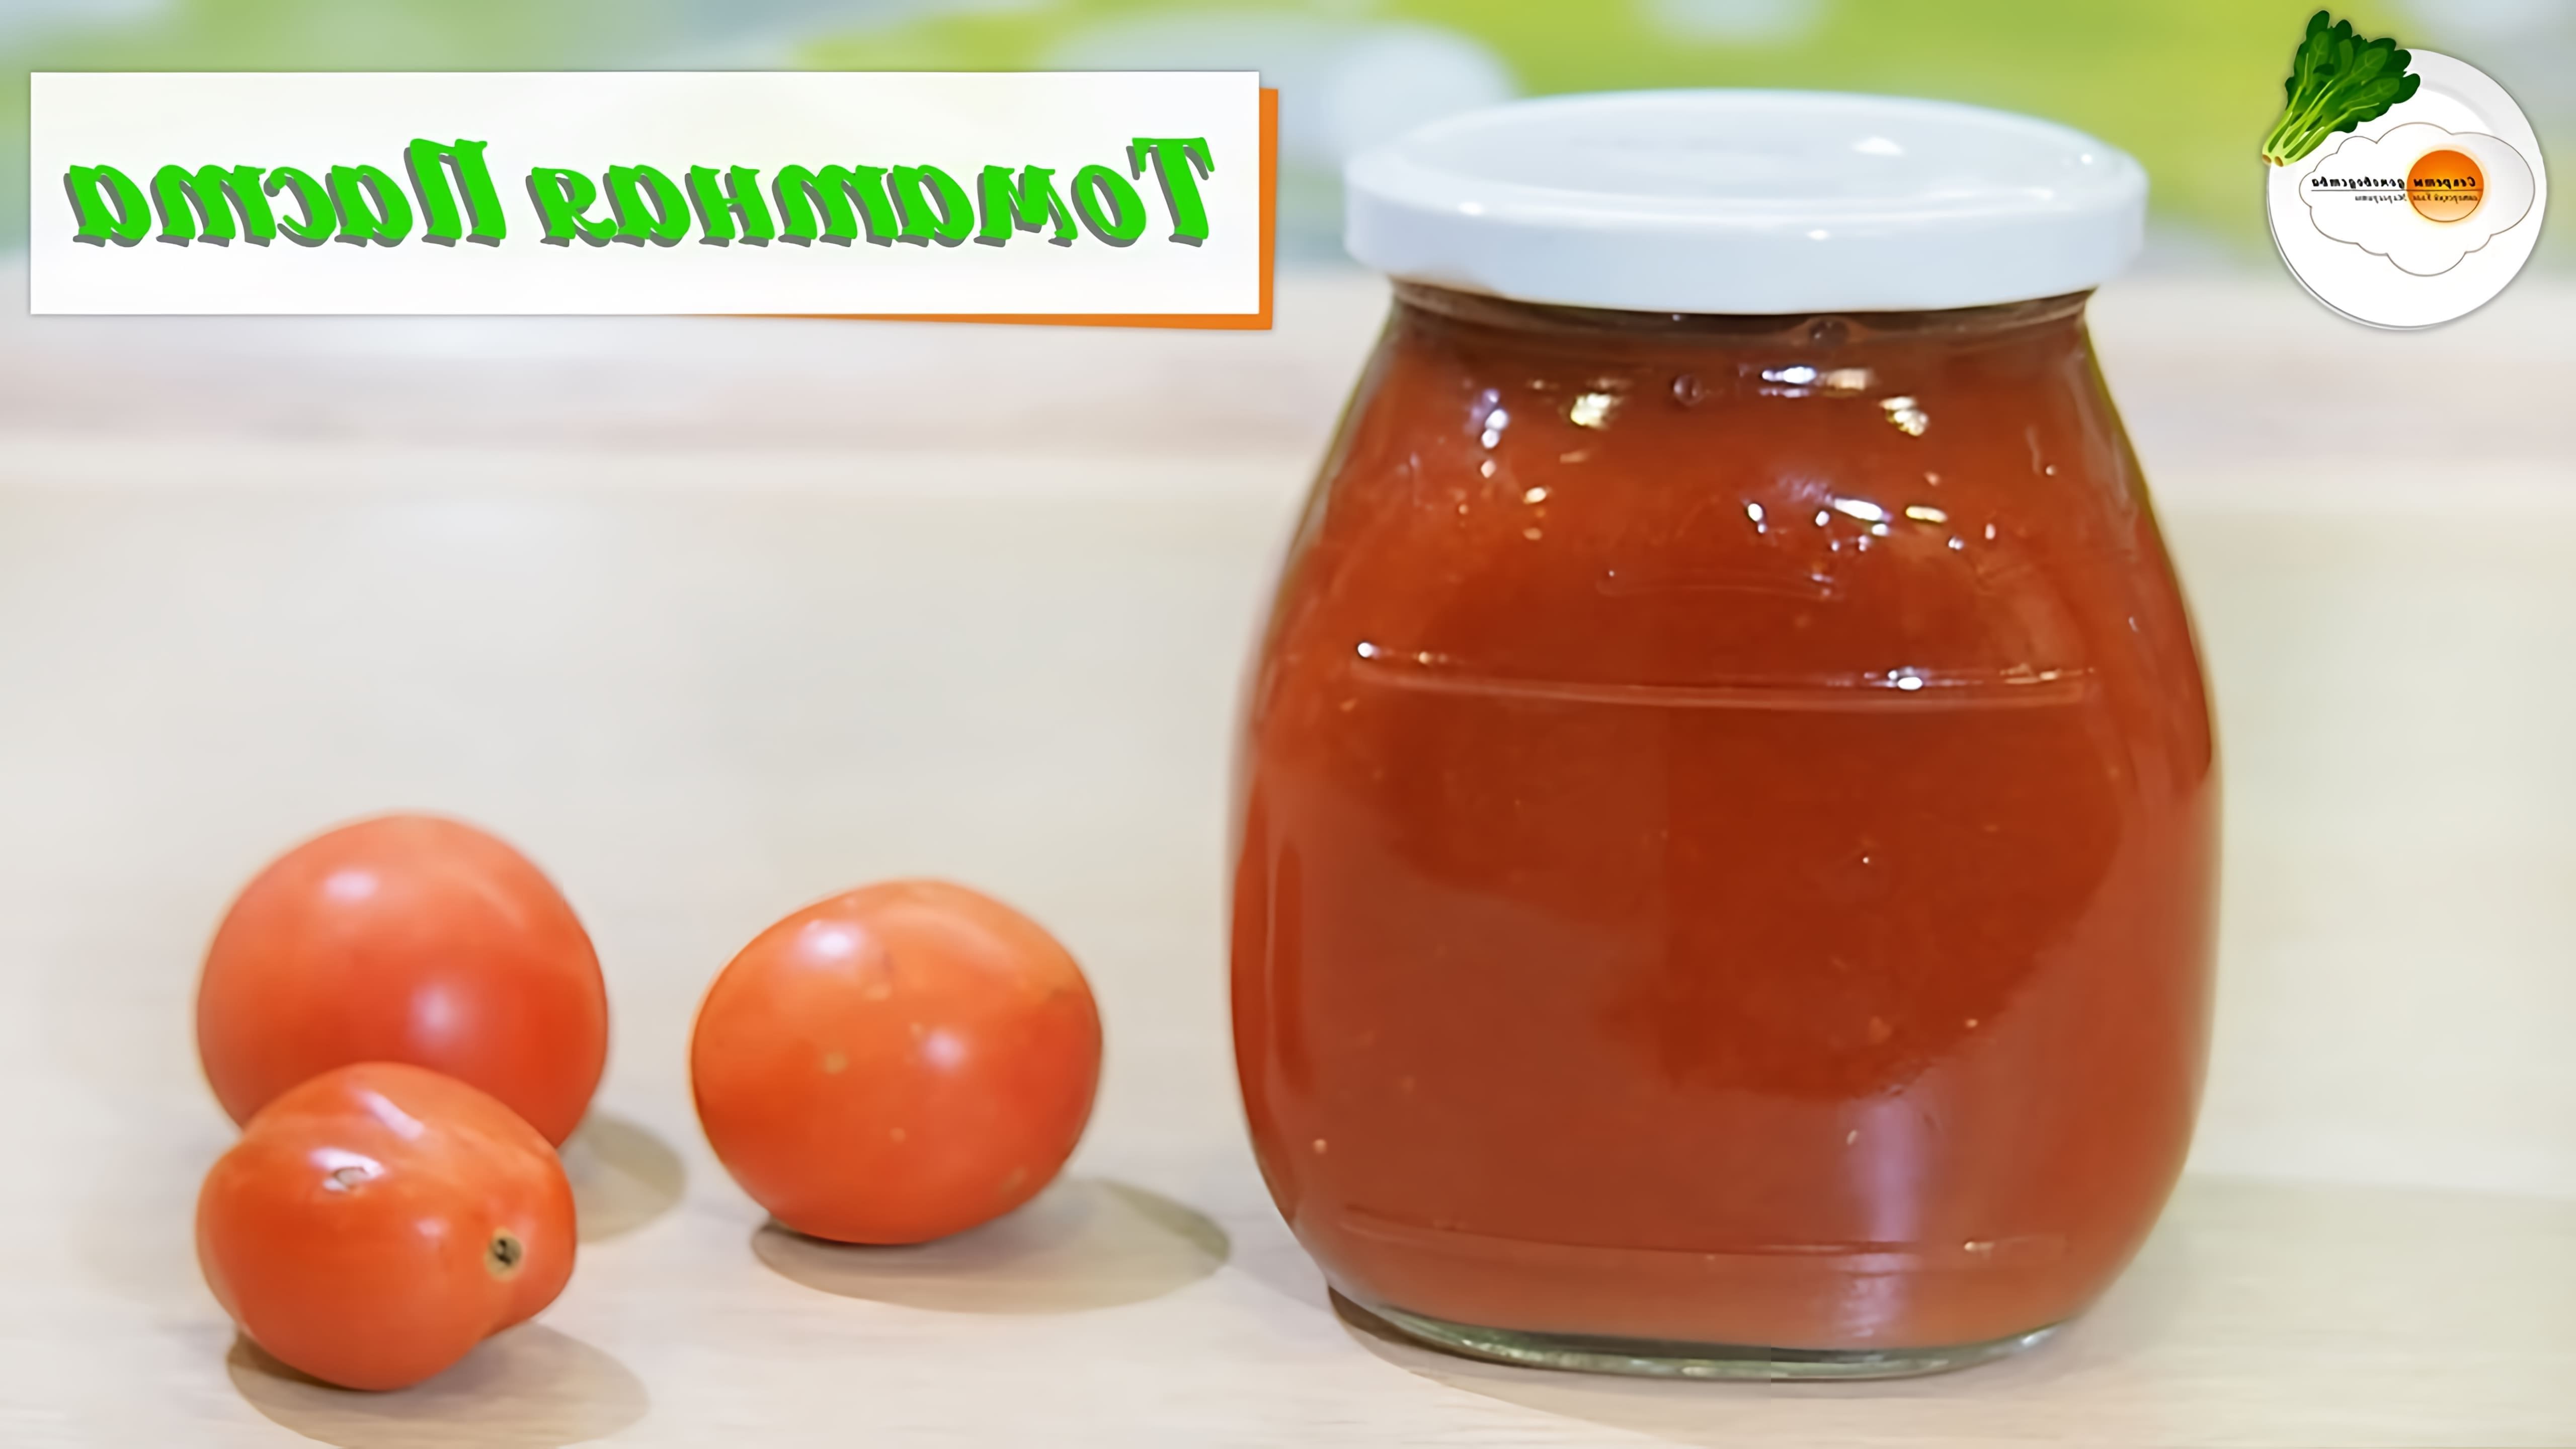 В этом видео демонстрируется процесс приготовления томатной пасты из помидоров в домашних условиях